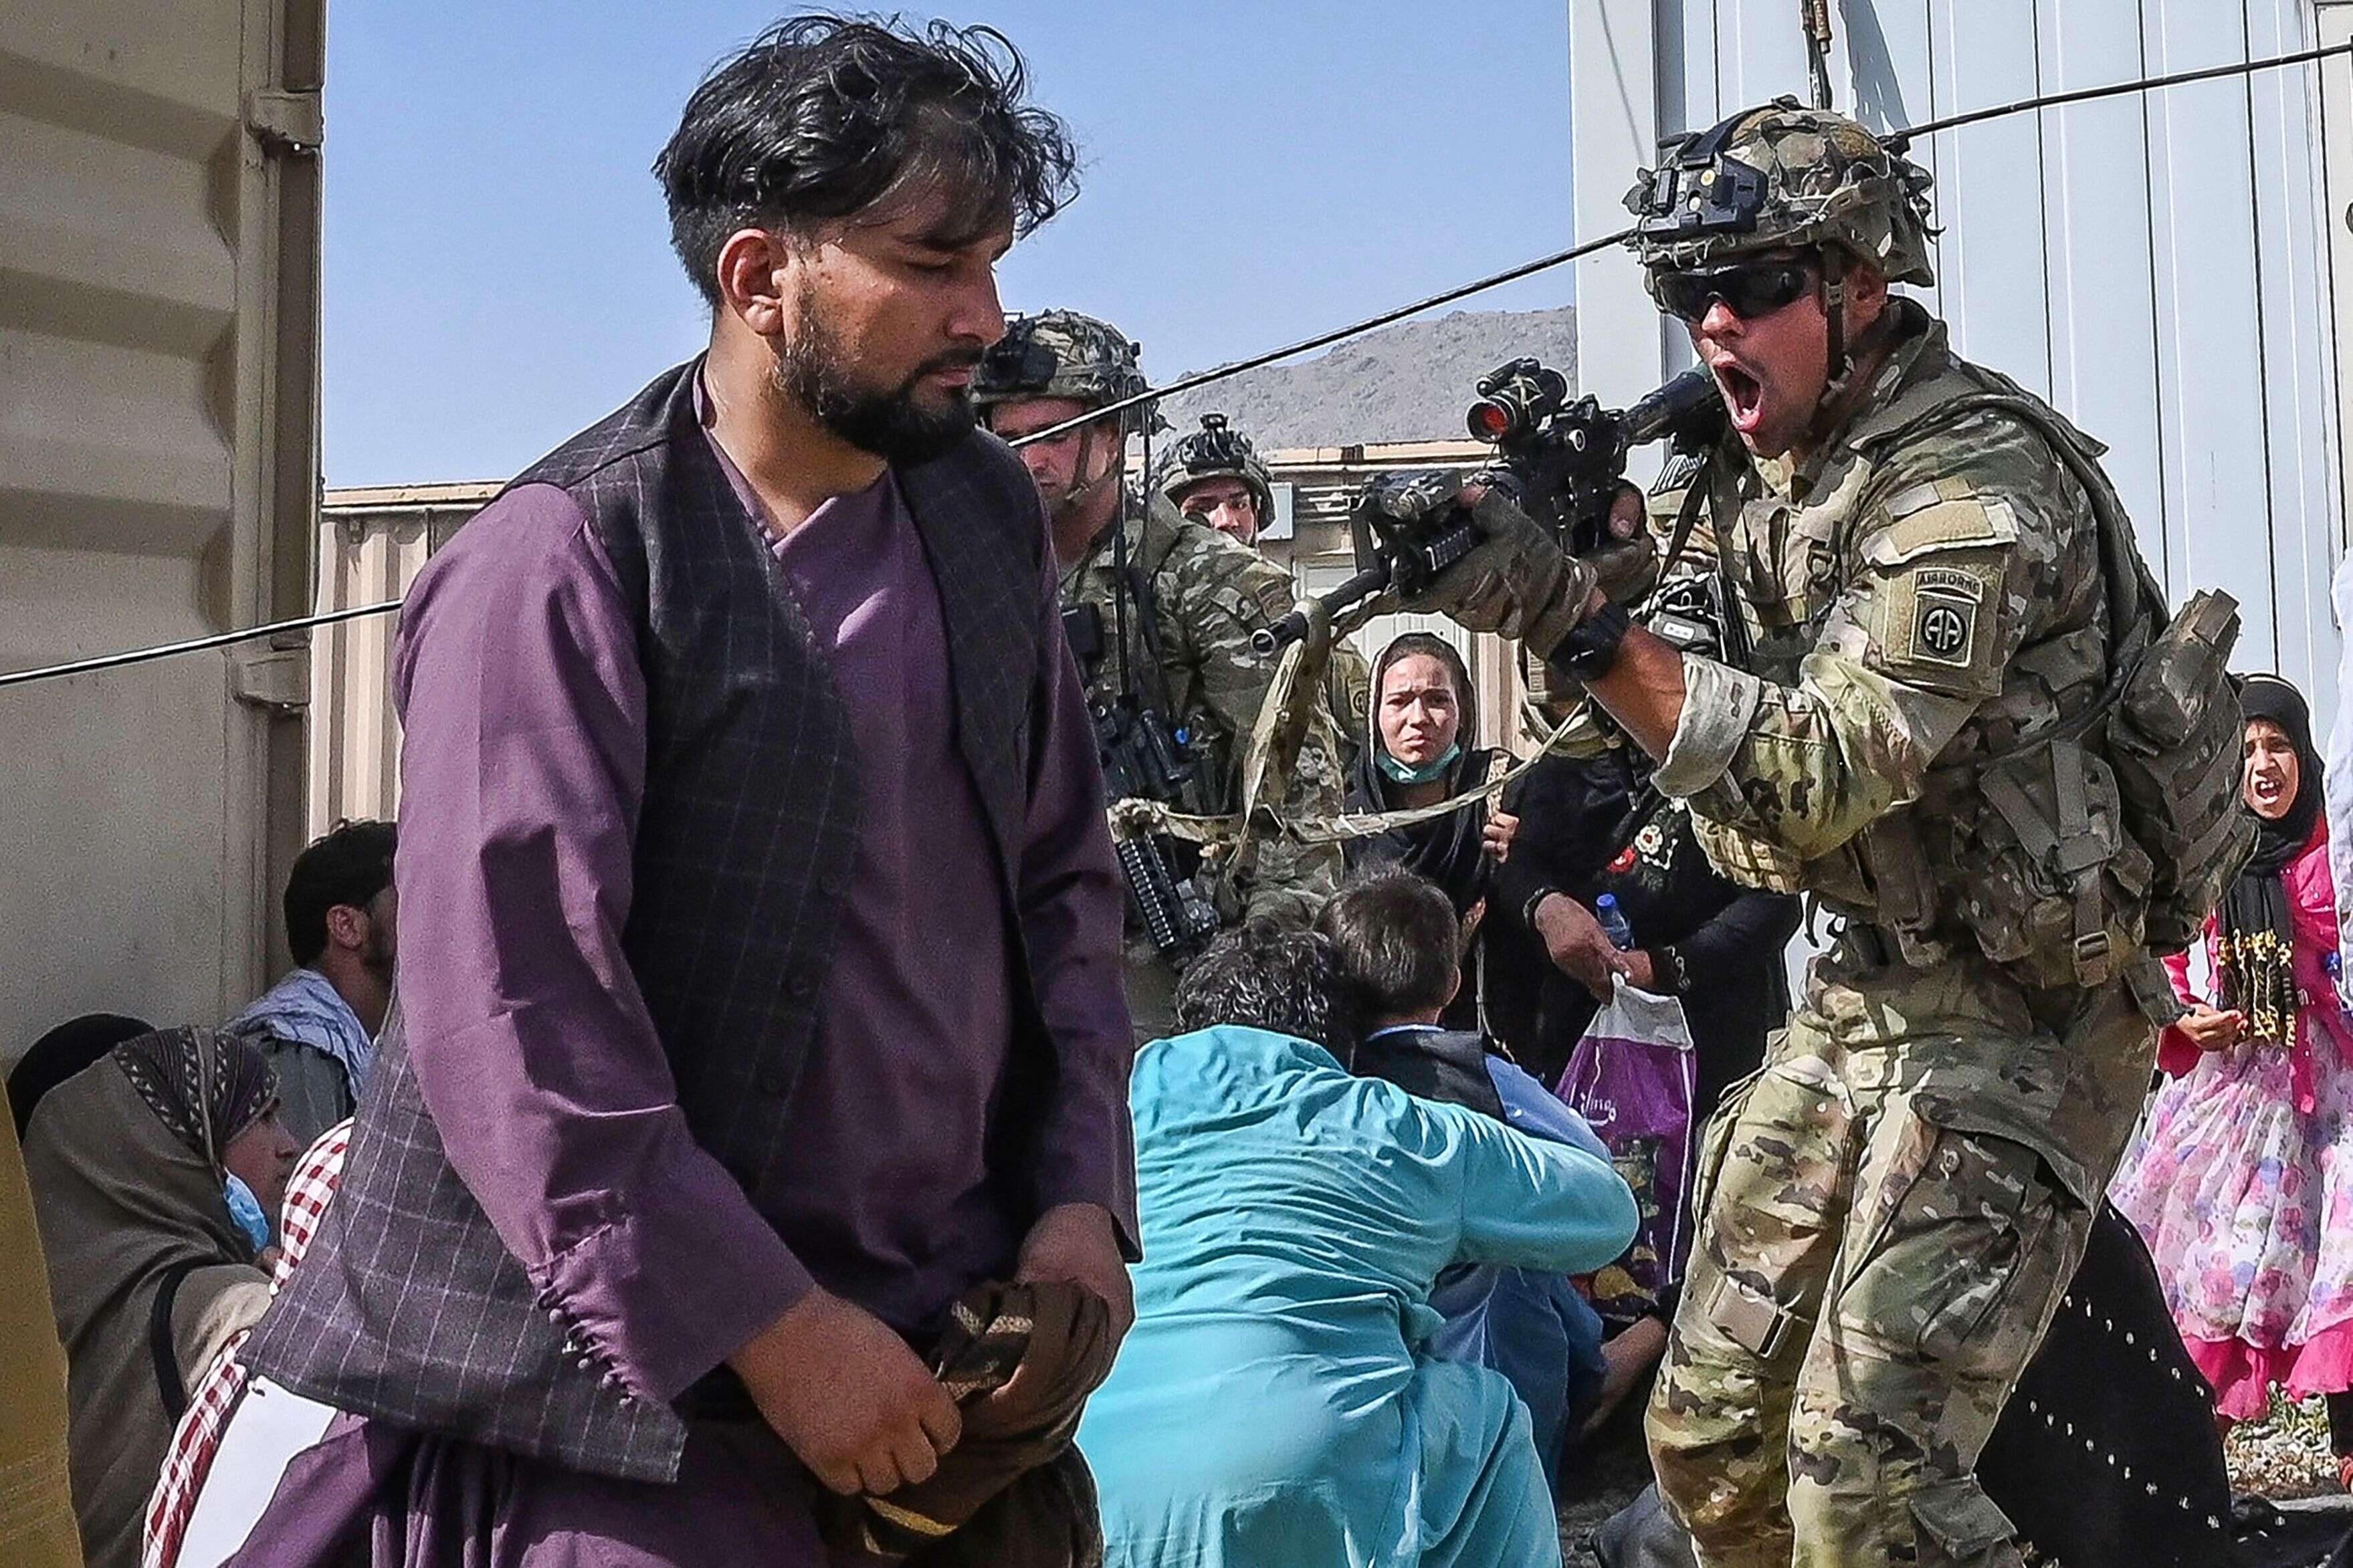 Alors qu'une foule d’Afghans s’est rendue à l’aéroport de Kaboul dans l'espoir de quitter le pays pris par les talibans, occasionnant des scènes de chaos et de panique, les soldats américains ont tenté de sécuriser l'aéroport, quitte parfois à tirer en l'air pour tenter de contrôler la foule, le 16 août 2021 à Kaboul, Afghanistan. (Photo by WAKIL KOHSAR/AFP via Getty Images)